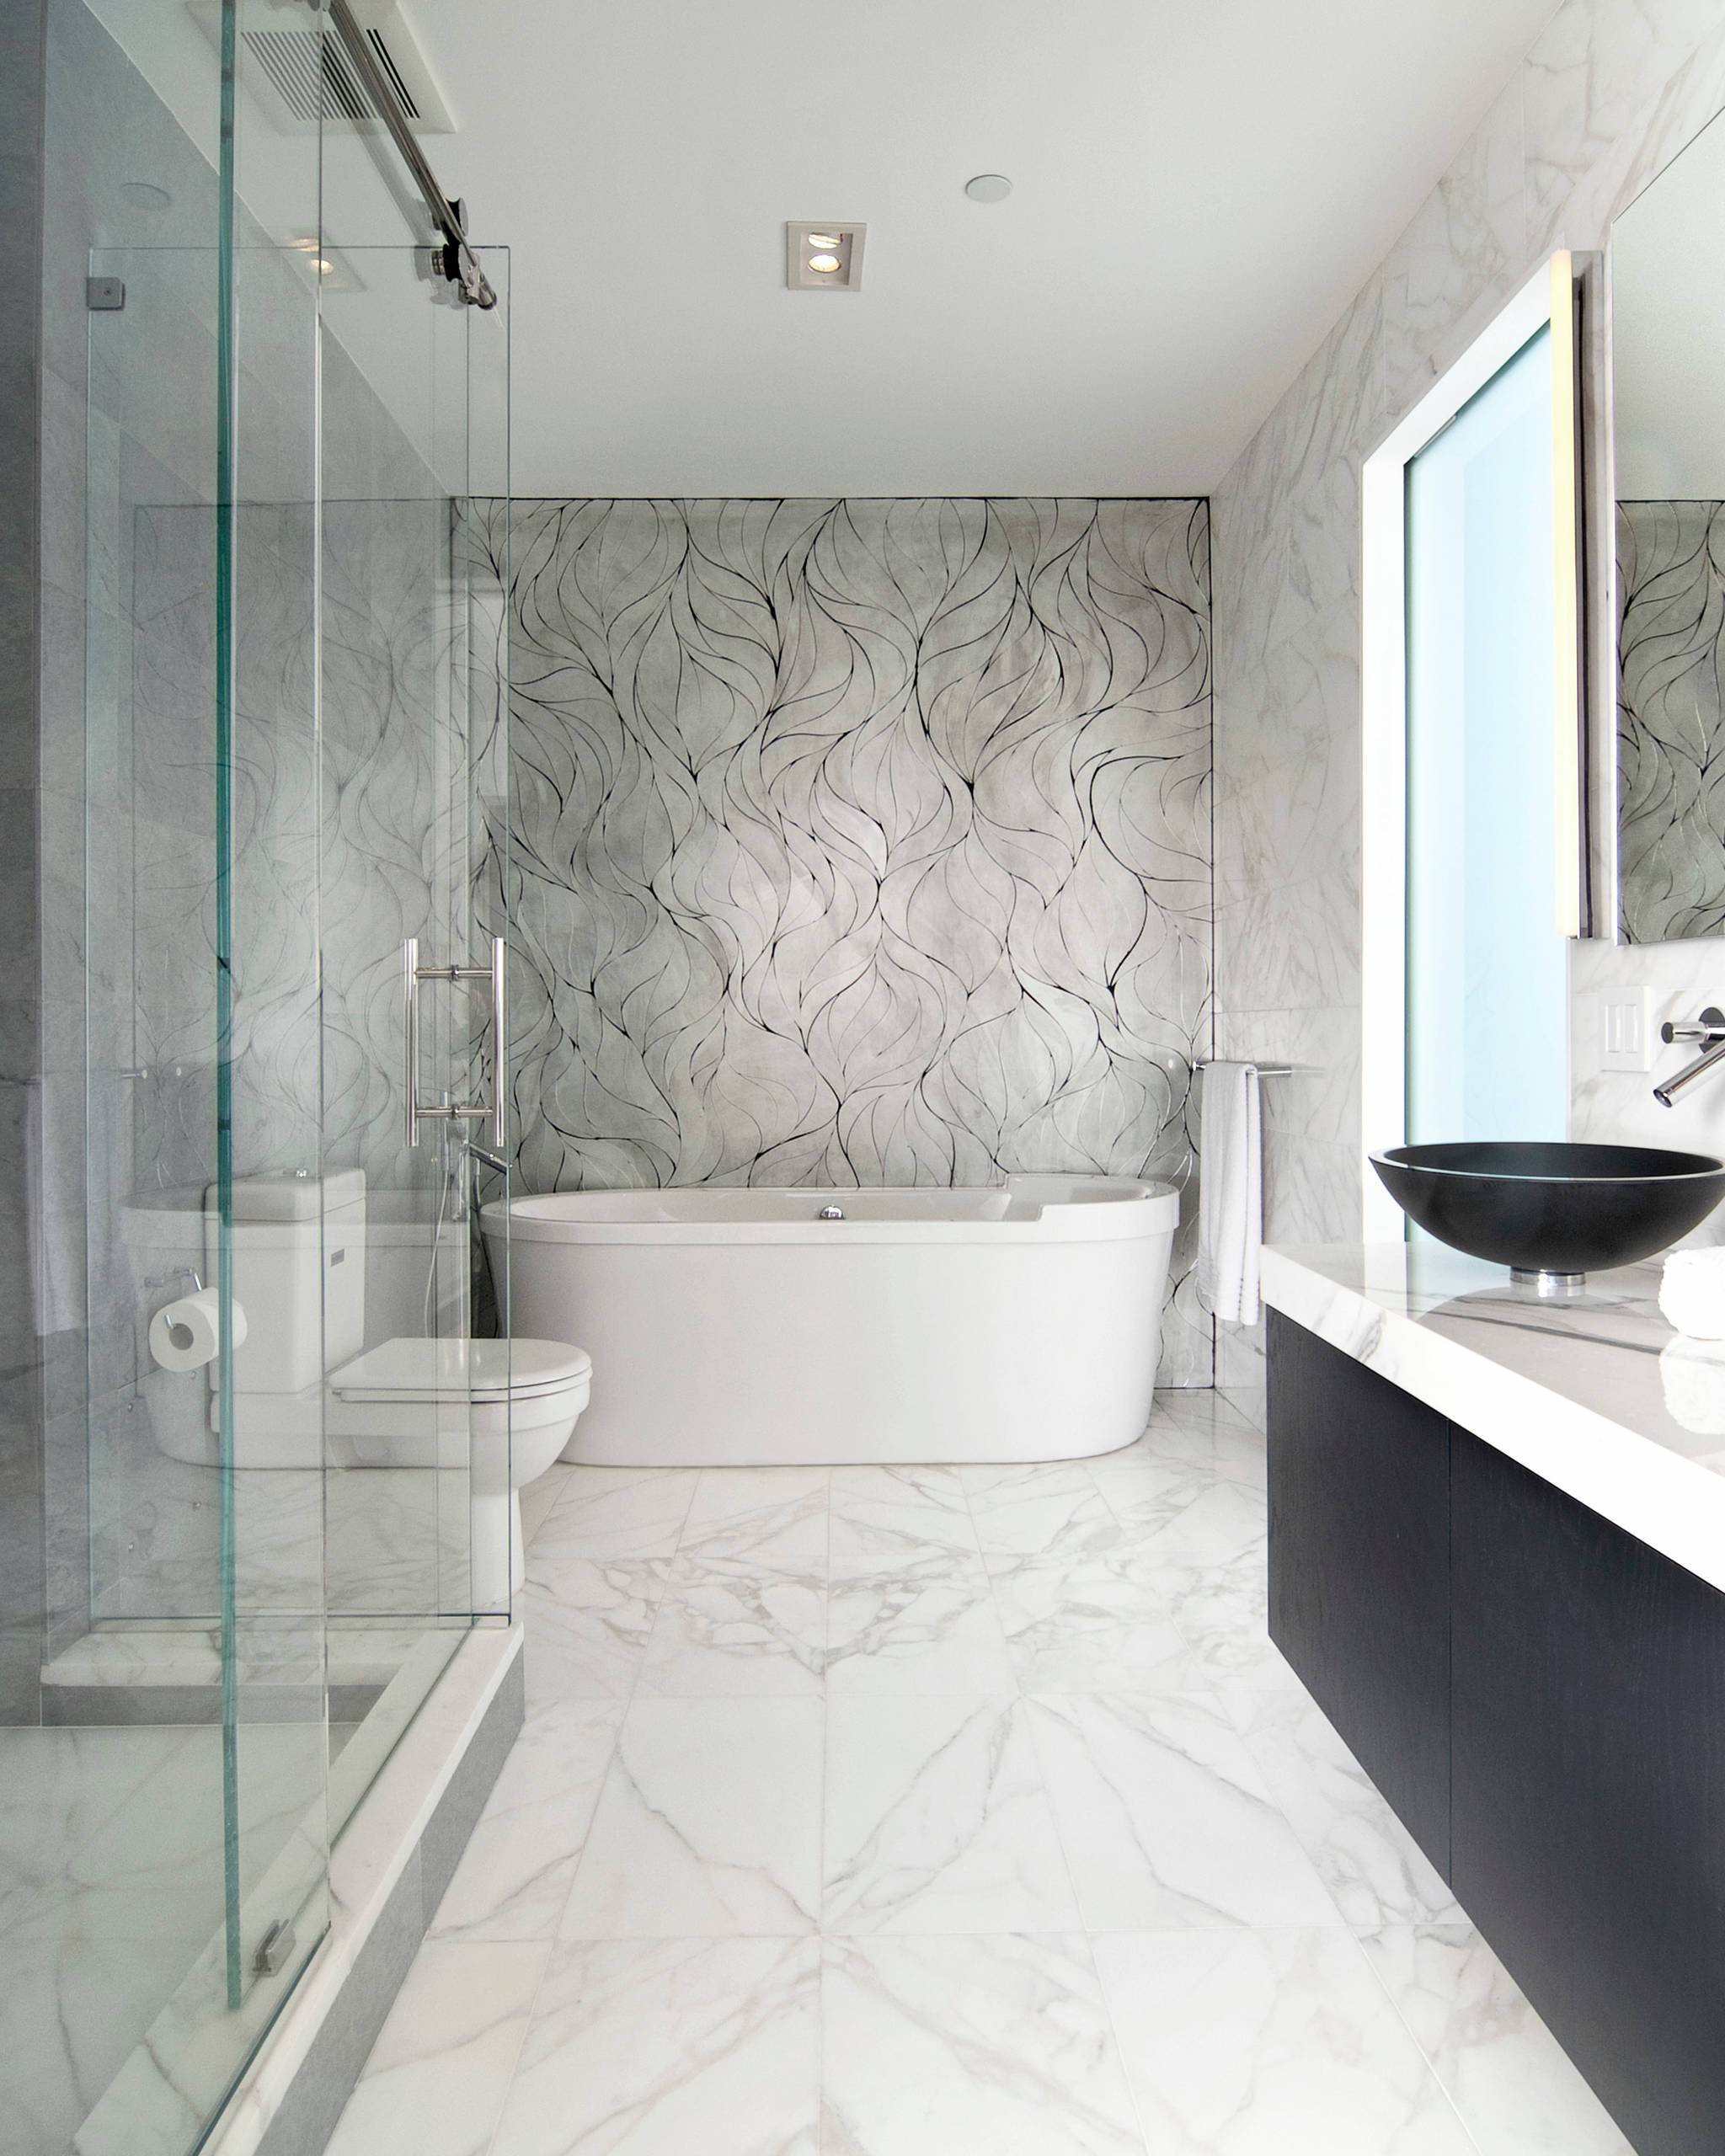 Плитка под мрамор в ванной комнате - 80 фото дизайна ванной с мраморной плиткой